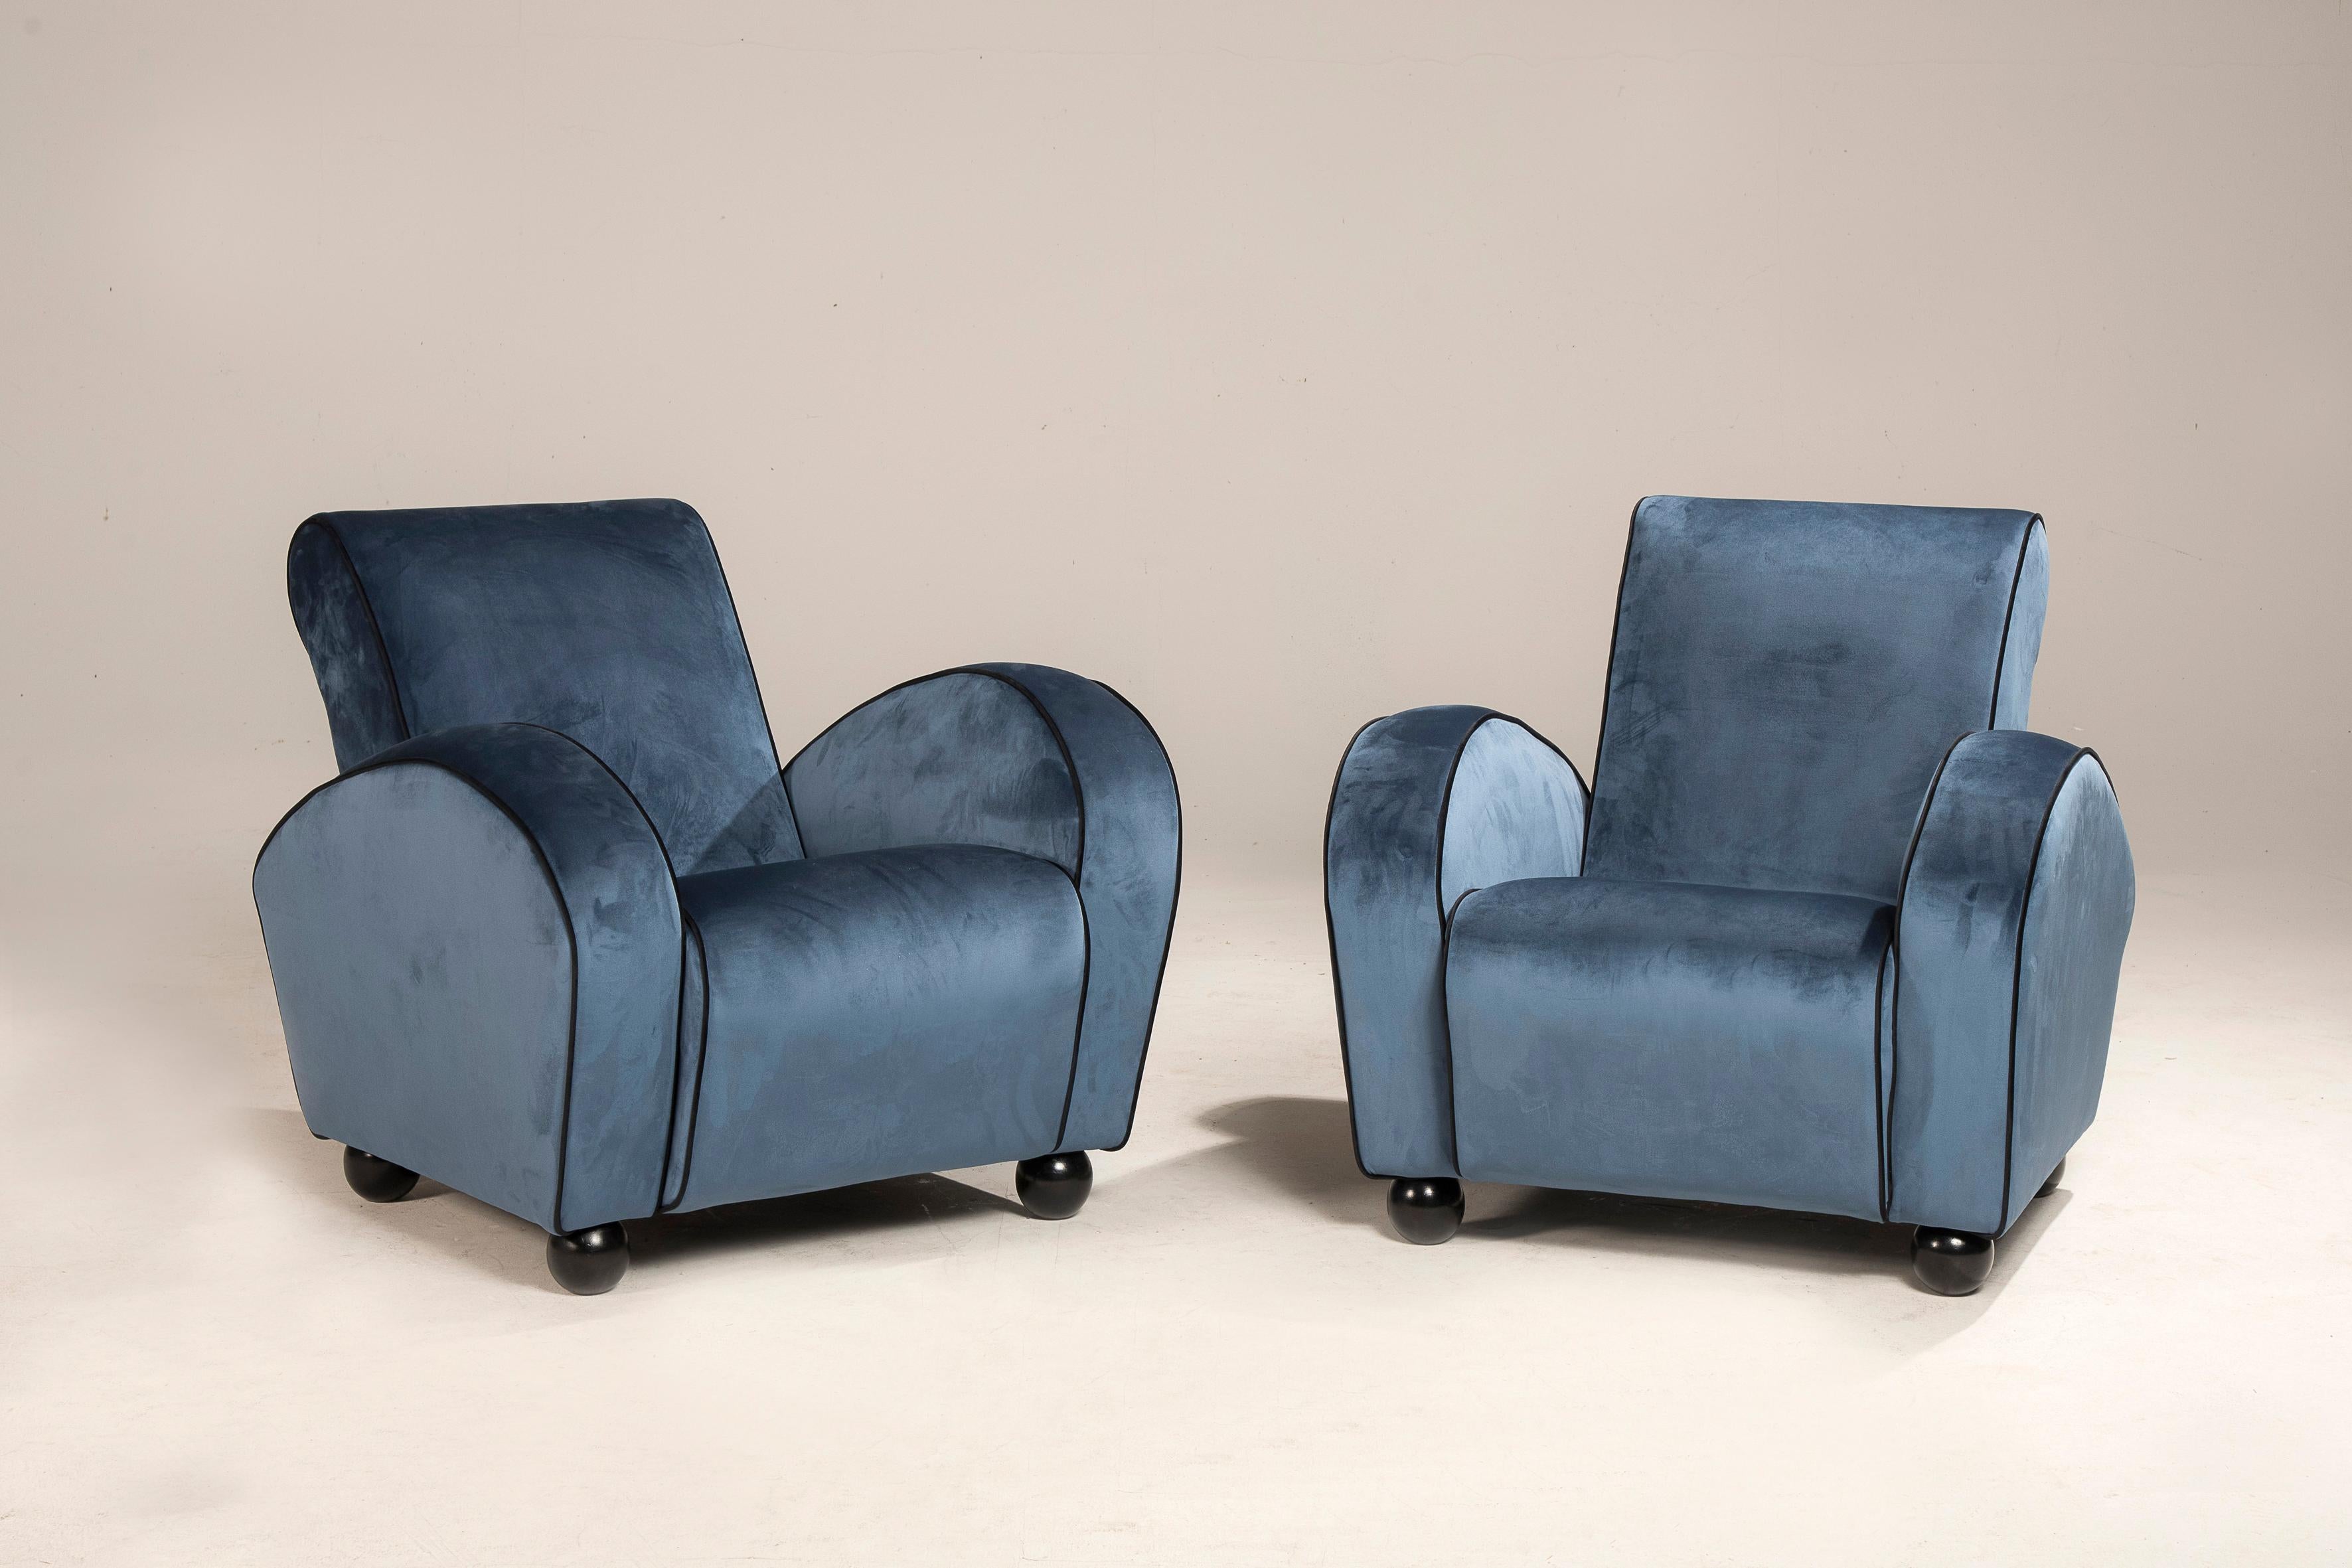 Paire de fauteuils Art Déco en velours bleu avec bordures noires.
Les fauteuils ont été retapissés avec des finitions faites à la main.

Dimensions : L. CM 80 x P. CM 80 x H. CM 83 - hauteur d'assise 42 cm

Le prix se réfère à la paire.